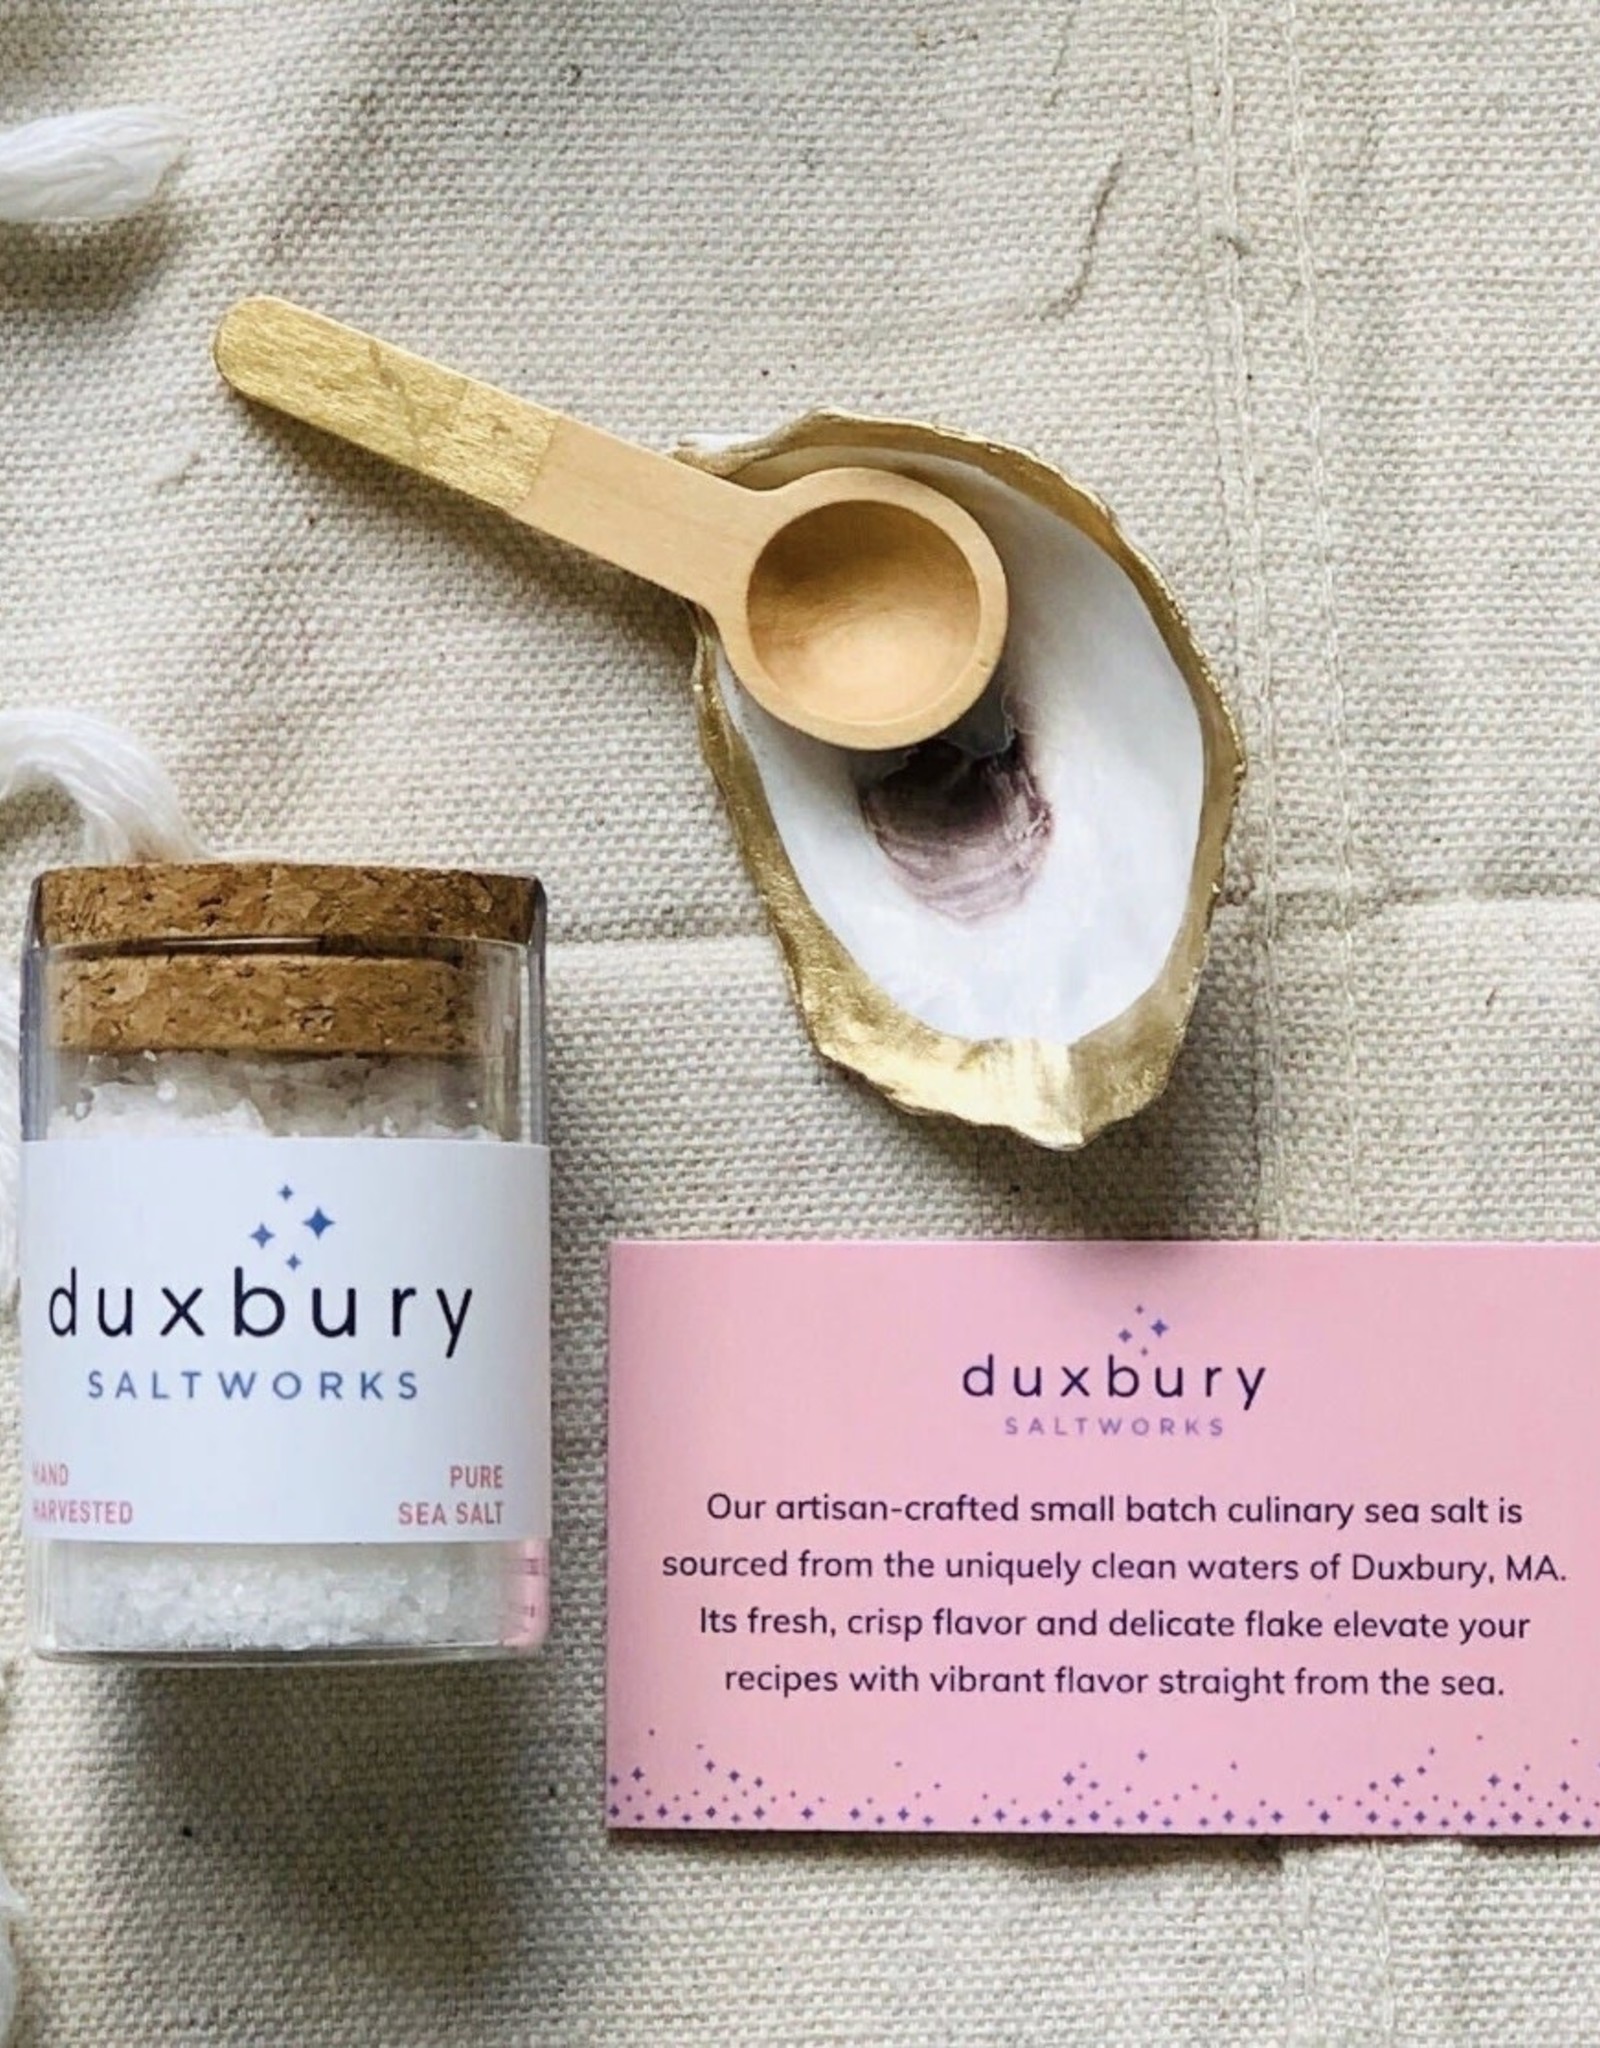 Duxbury Saltworks Saltwork golden Duo Gift Set